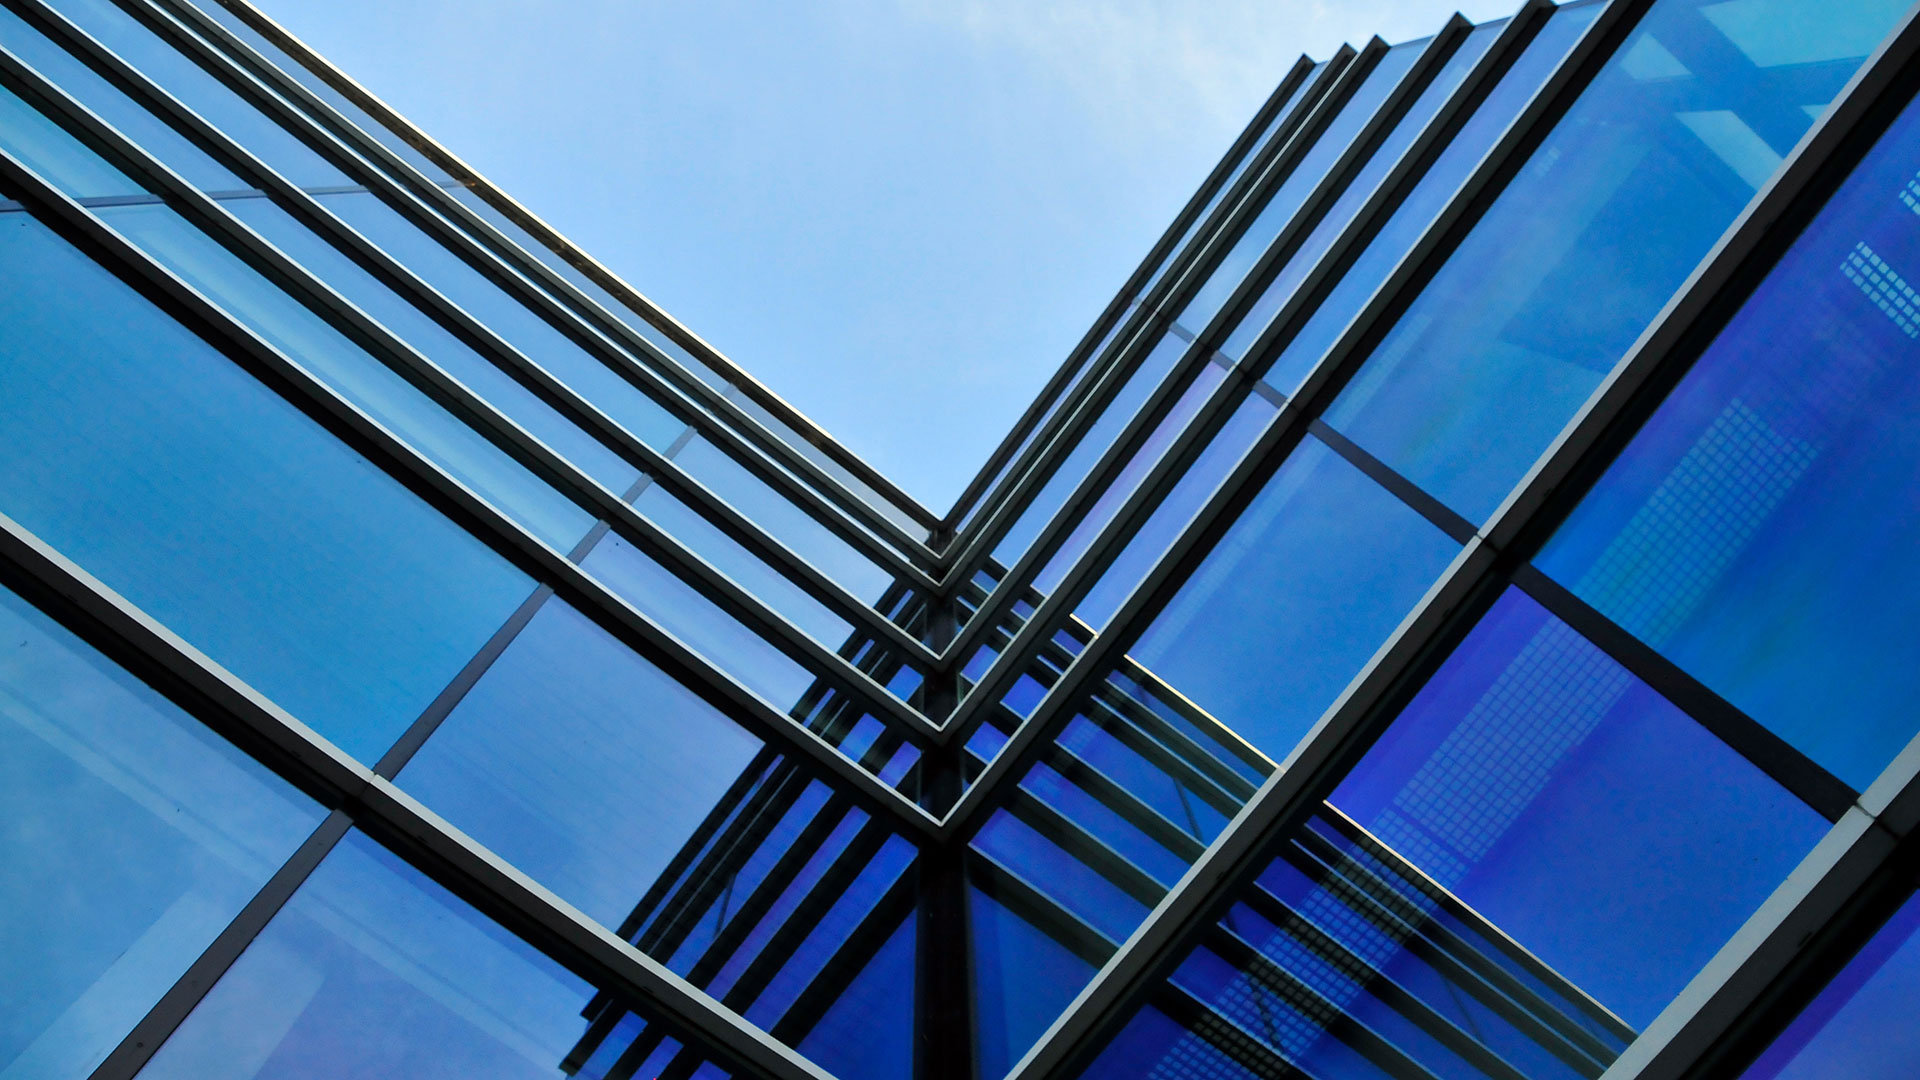 Glasfassade eines Wolkenkratzers mit blauem elektrochromem Glas